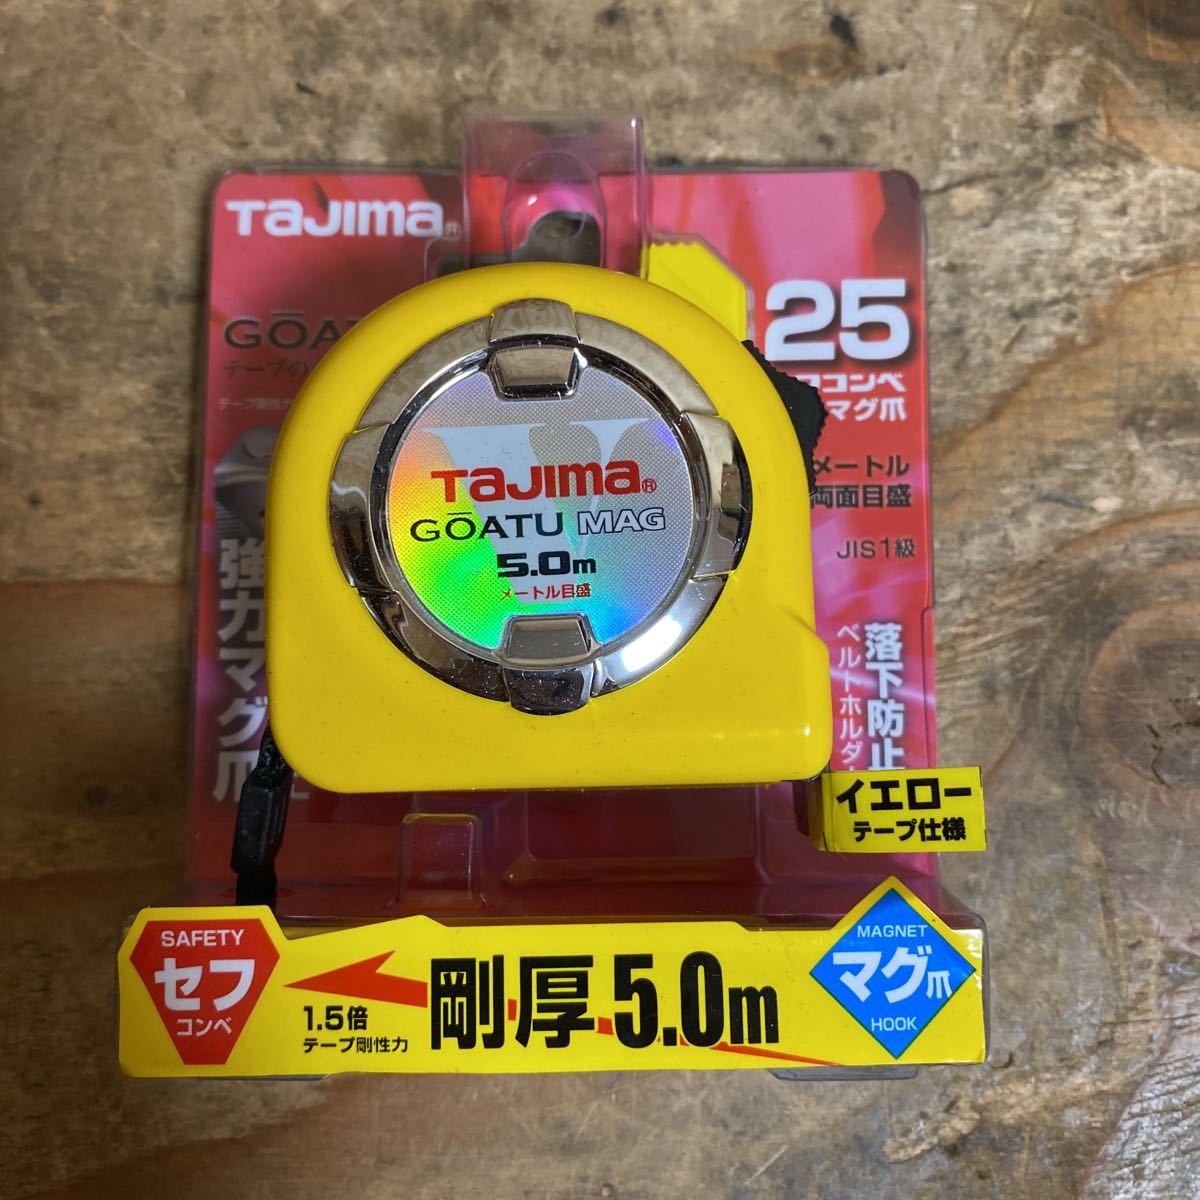  не использовался товар *tajima(Tajima) Gou толщина sef блокировка кружка коготь 25 5.0m( метров шкала ) GASFLM2550 Major шкала измерять * стоимость доставки 520*re+